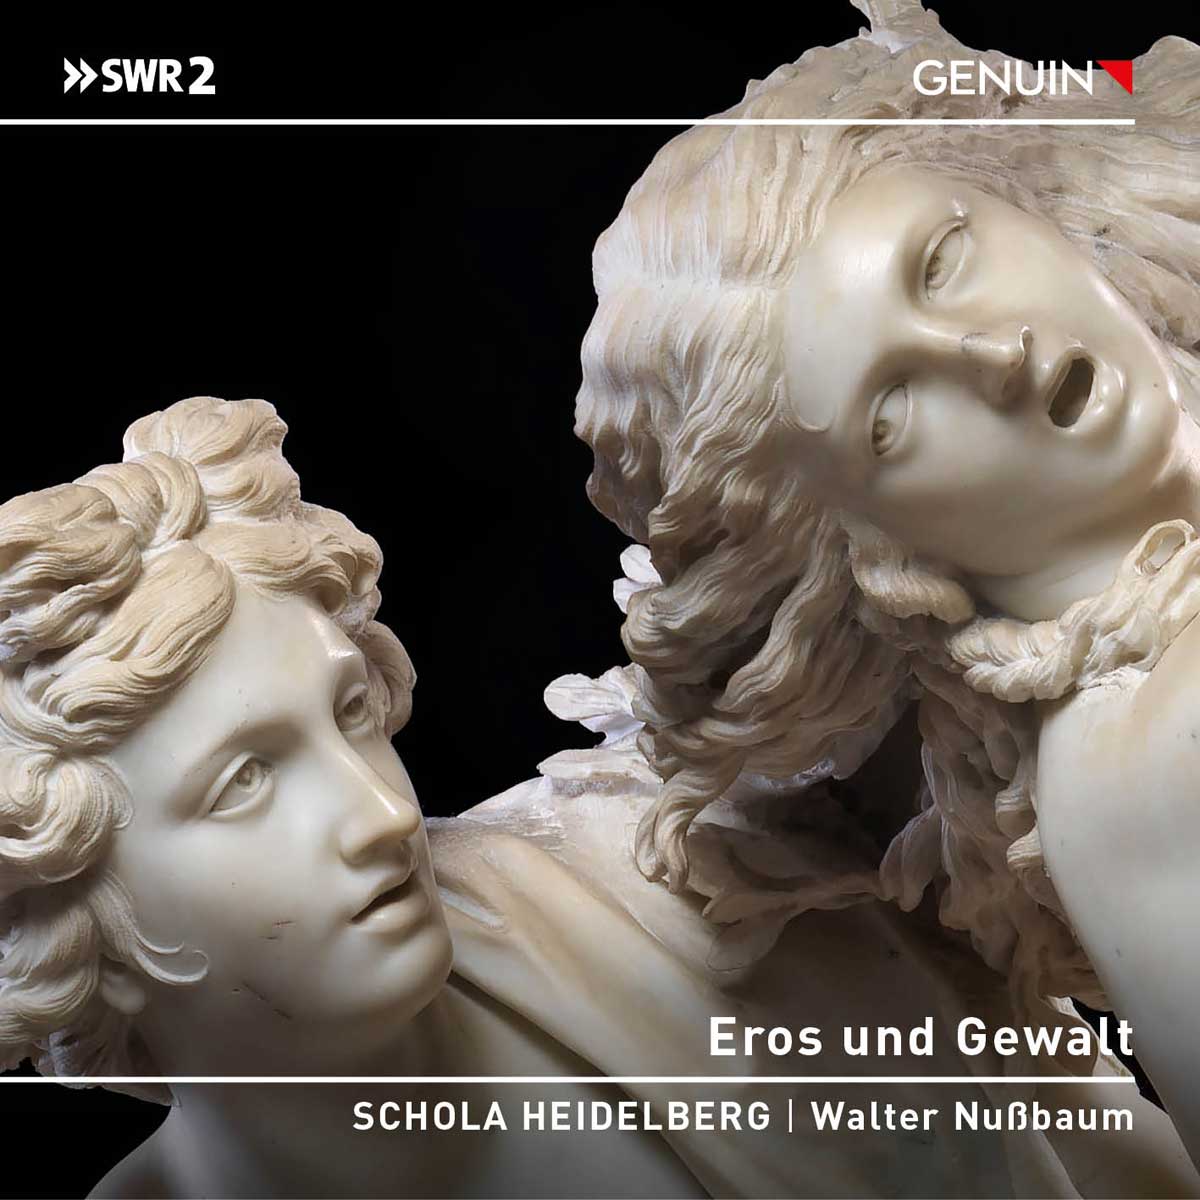 CD album cover 'Eros und Gewalt' (GEN 23830) with SCHOLA HEIDELBERG, Walter Nußbaum, Michael Rotschopf